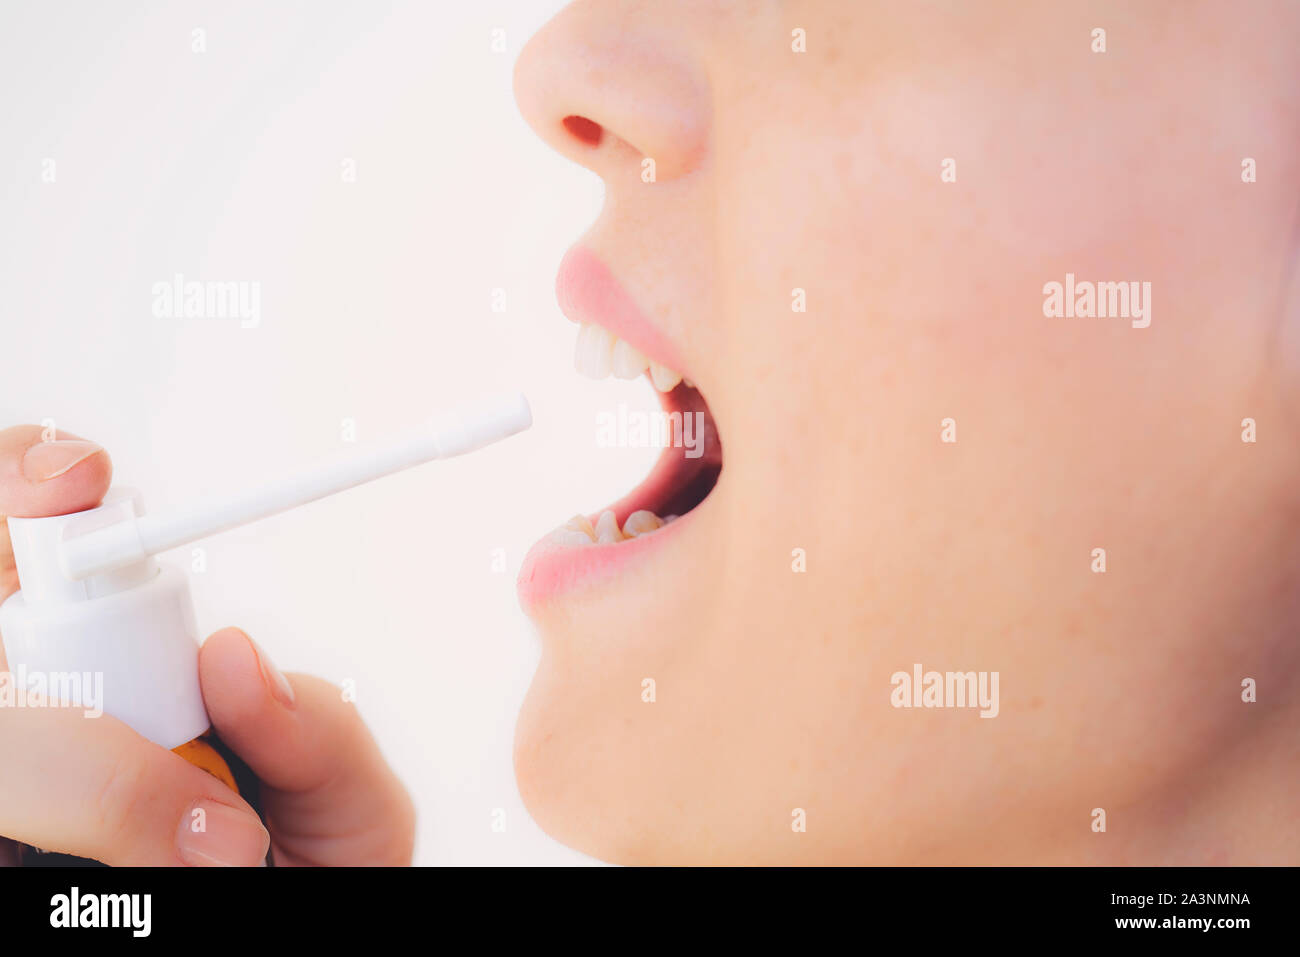 Spray per il mal di gola. Foto di una donna che considera la sua gola con uno spray e spruzza nella sua bocca. Il concetto di salute e malattia. Foto Stock